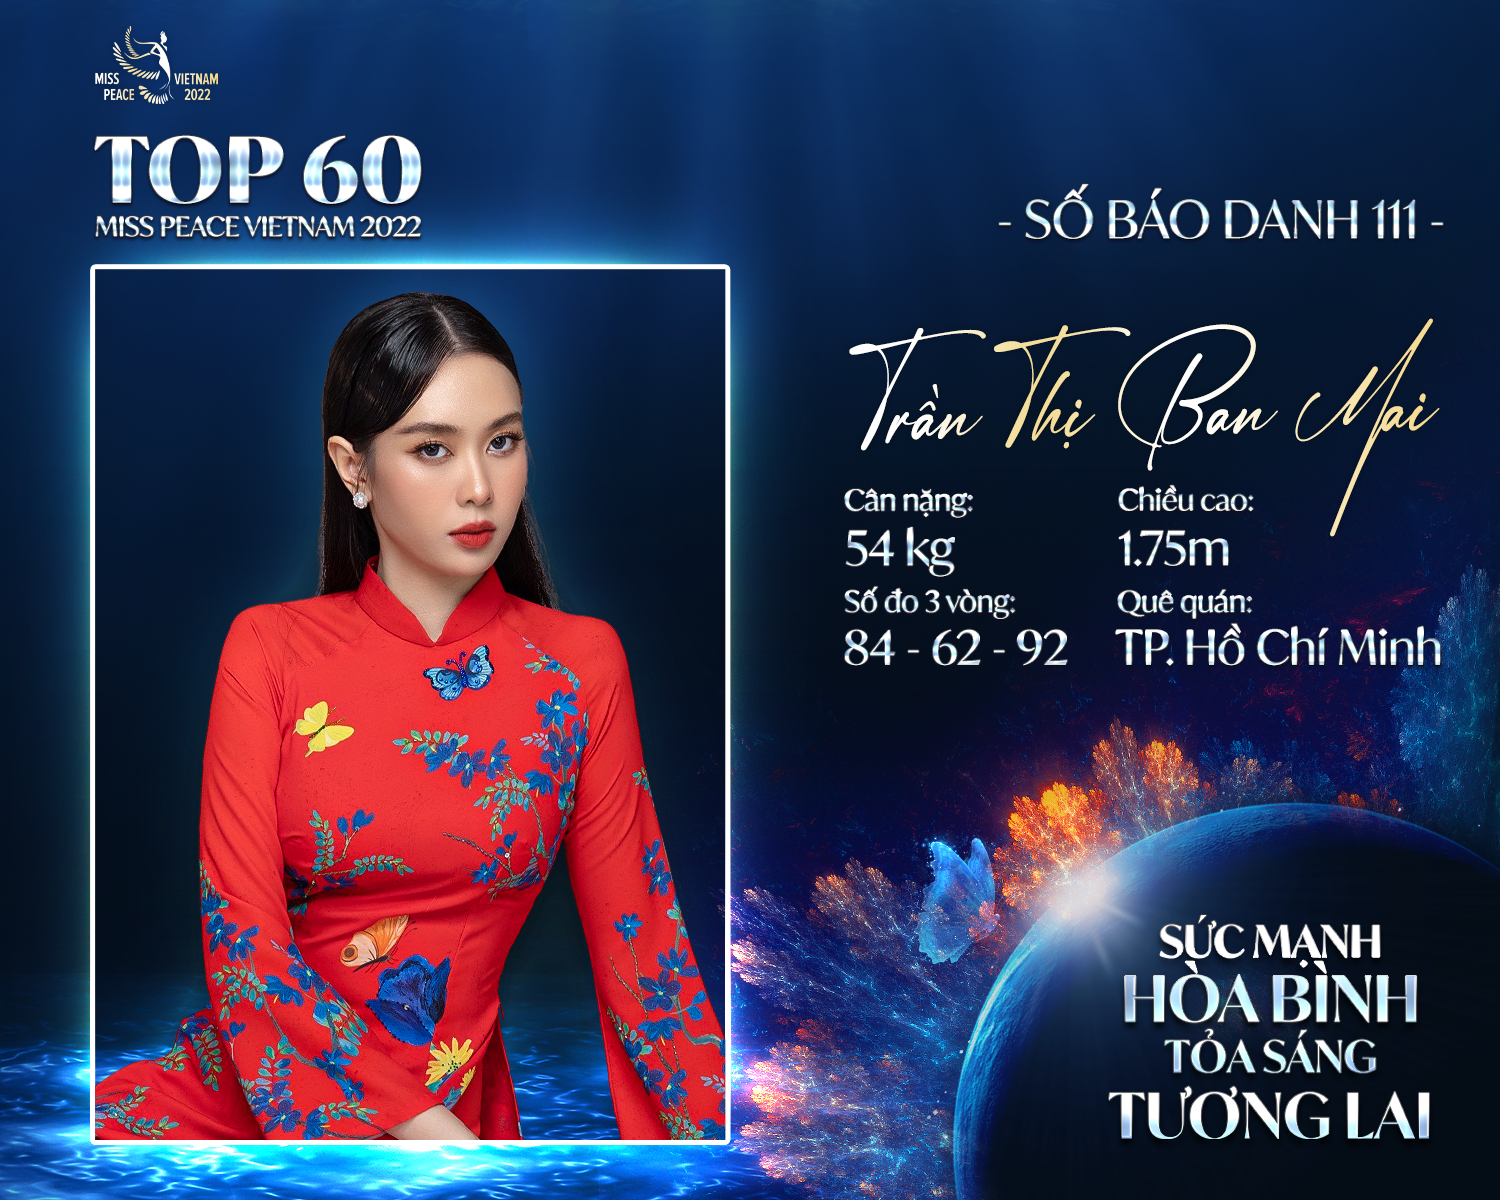 5 gương mặt sáng giá của Hoa hậu Hòa bình Việt Nam 2022 gây chú ý bởi chiều cao “khủng”, ngoại ngữ “đỉnh” - Ảnh 1.